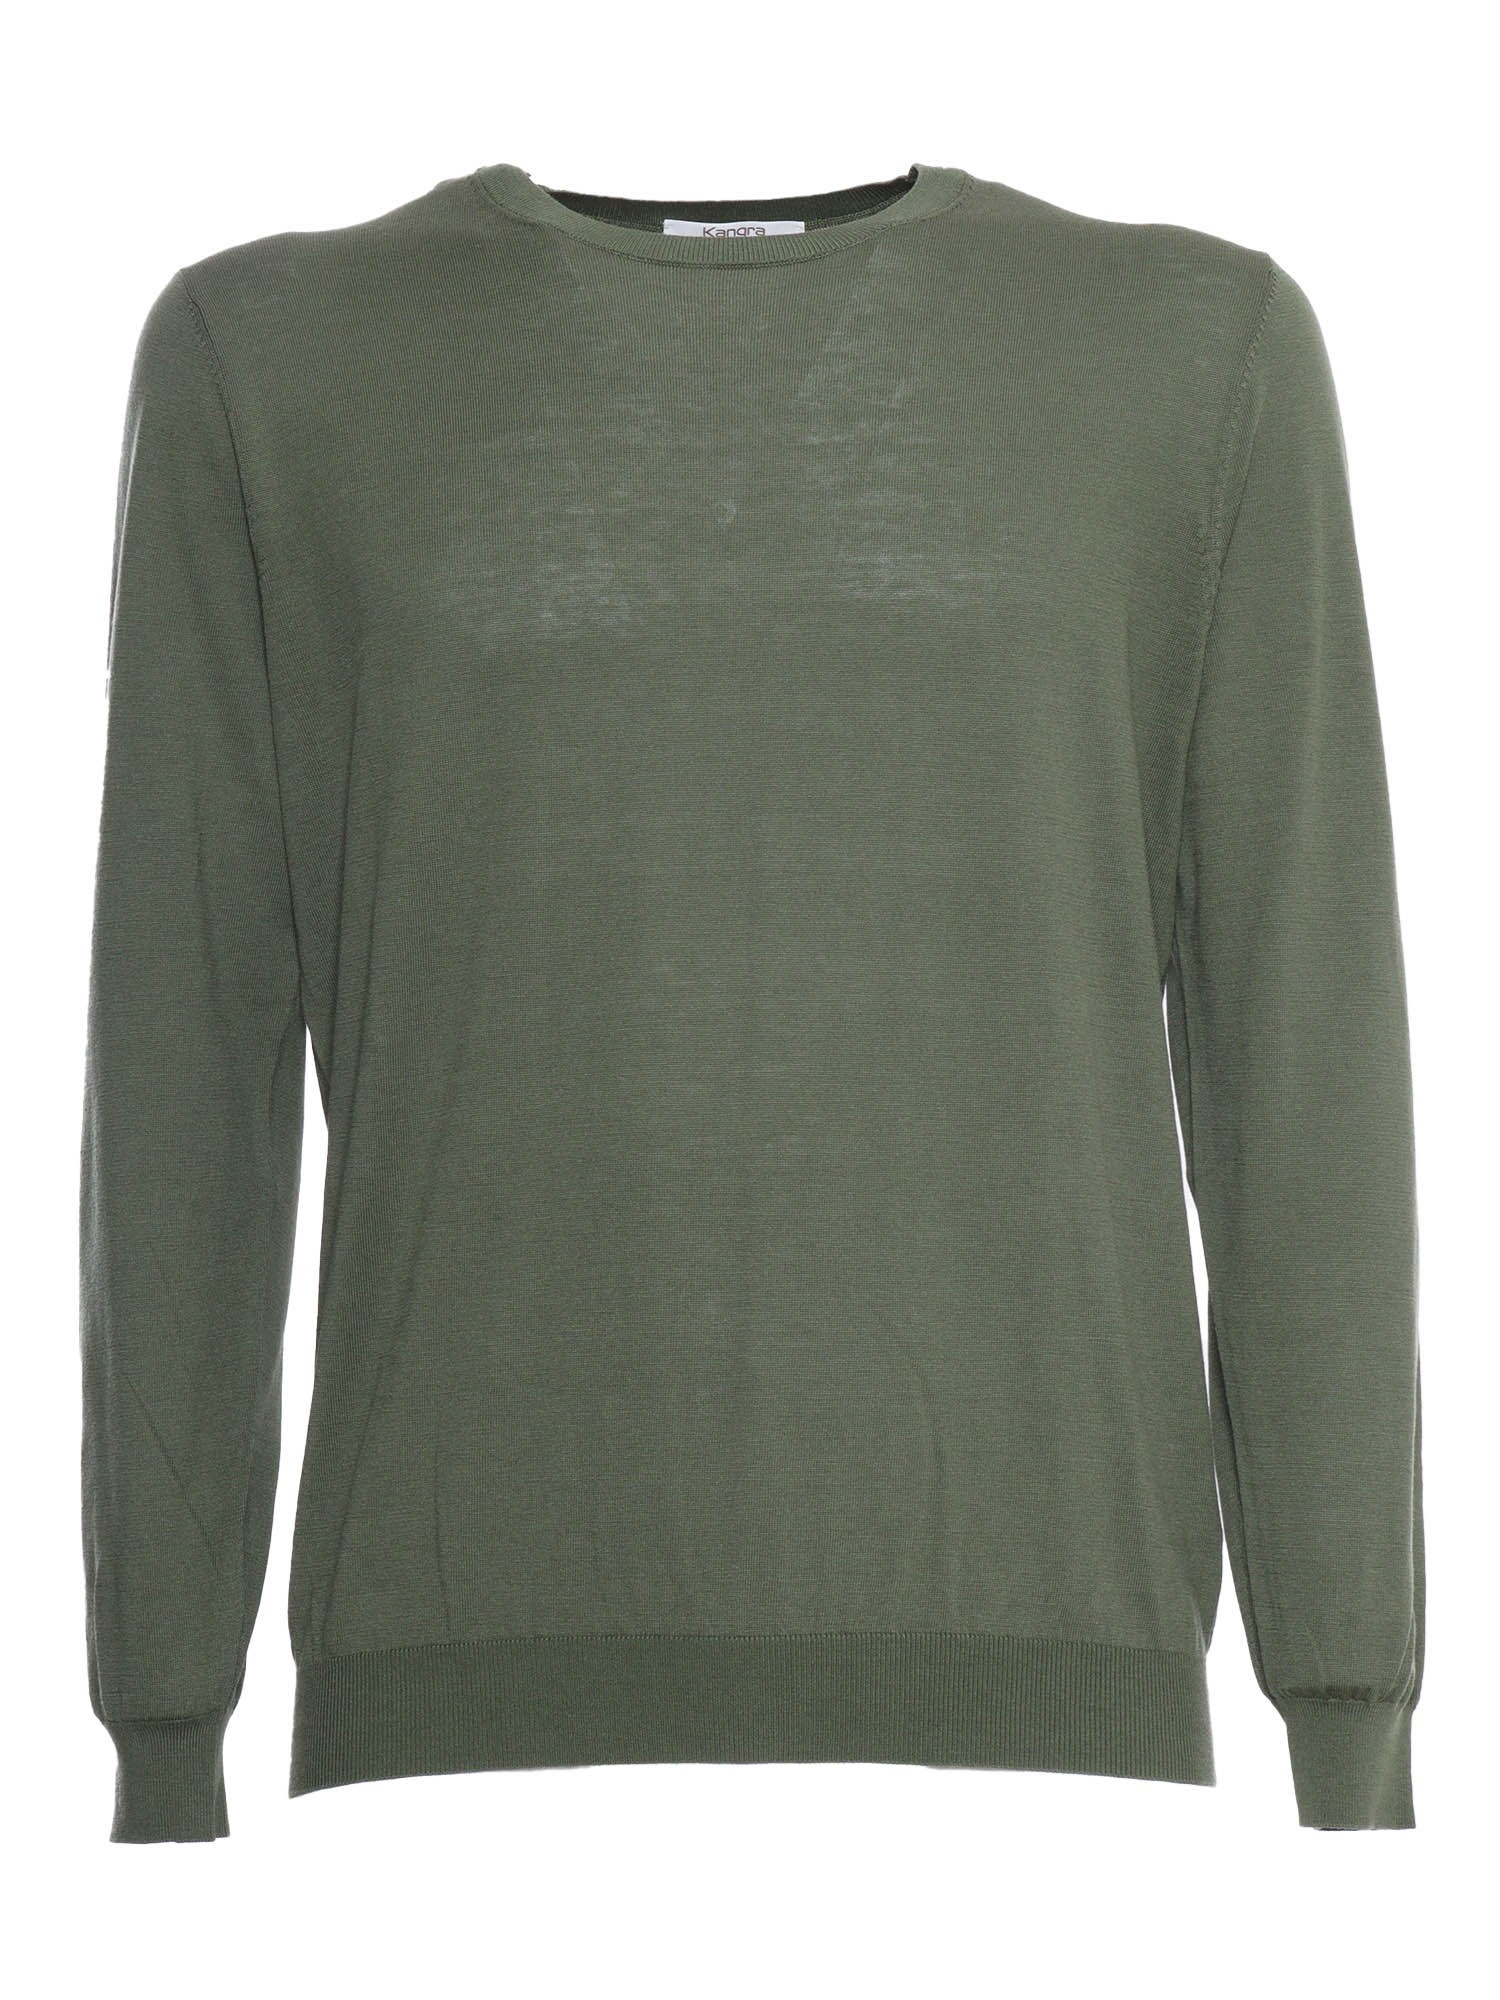 Kangra Cashmere Sage Green Sweater